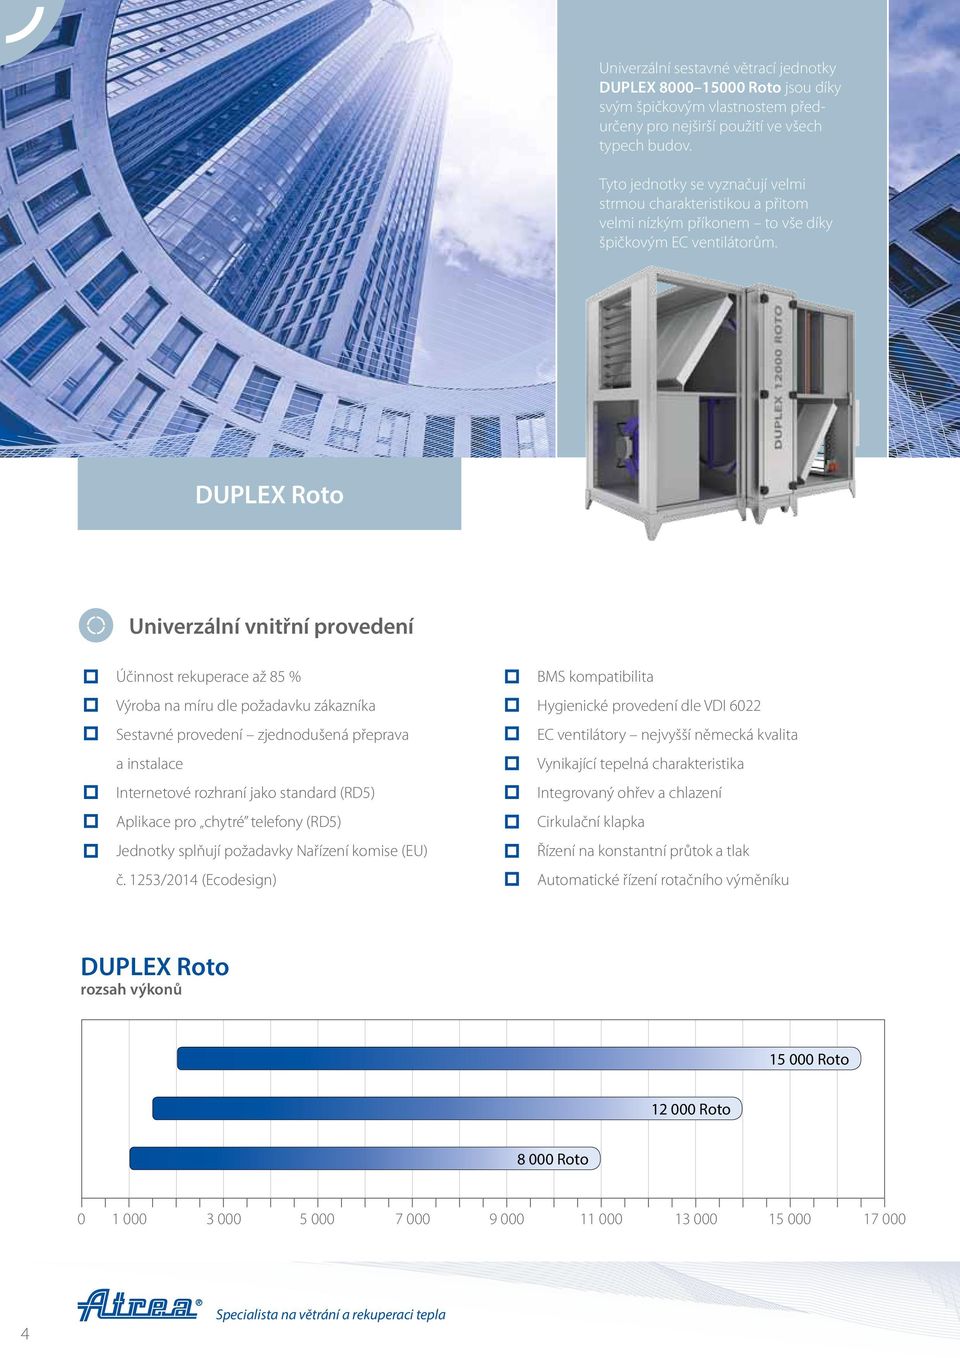 DUPLEX Roto Univerzální vnitřní provedení Účinnost rekuperace až 85 % Výroba na míru dle požadavku zákazníka Sestavné provedení zjednodušená přeprava a instalace Internetové rozhraní jako standard